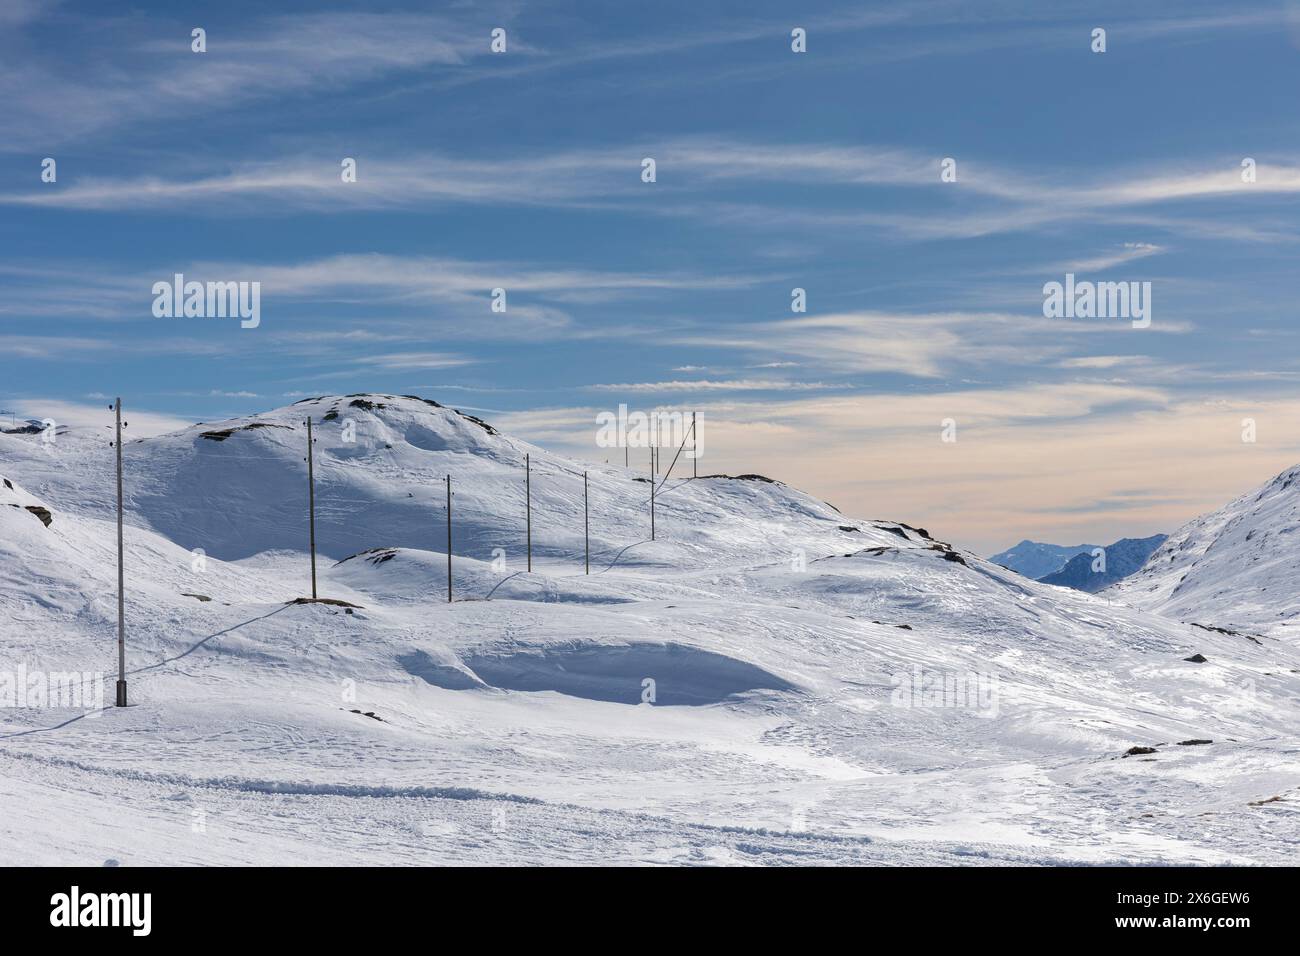 Paysage spectaculaire du col de la Bernina en Suisse lors d'une journée d'hiver avec beaucoup de soleil. Toutes les montagnes sont recouvertes de beaucoup de neige. Nobo Banque D'Images